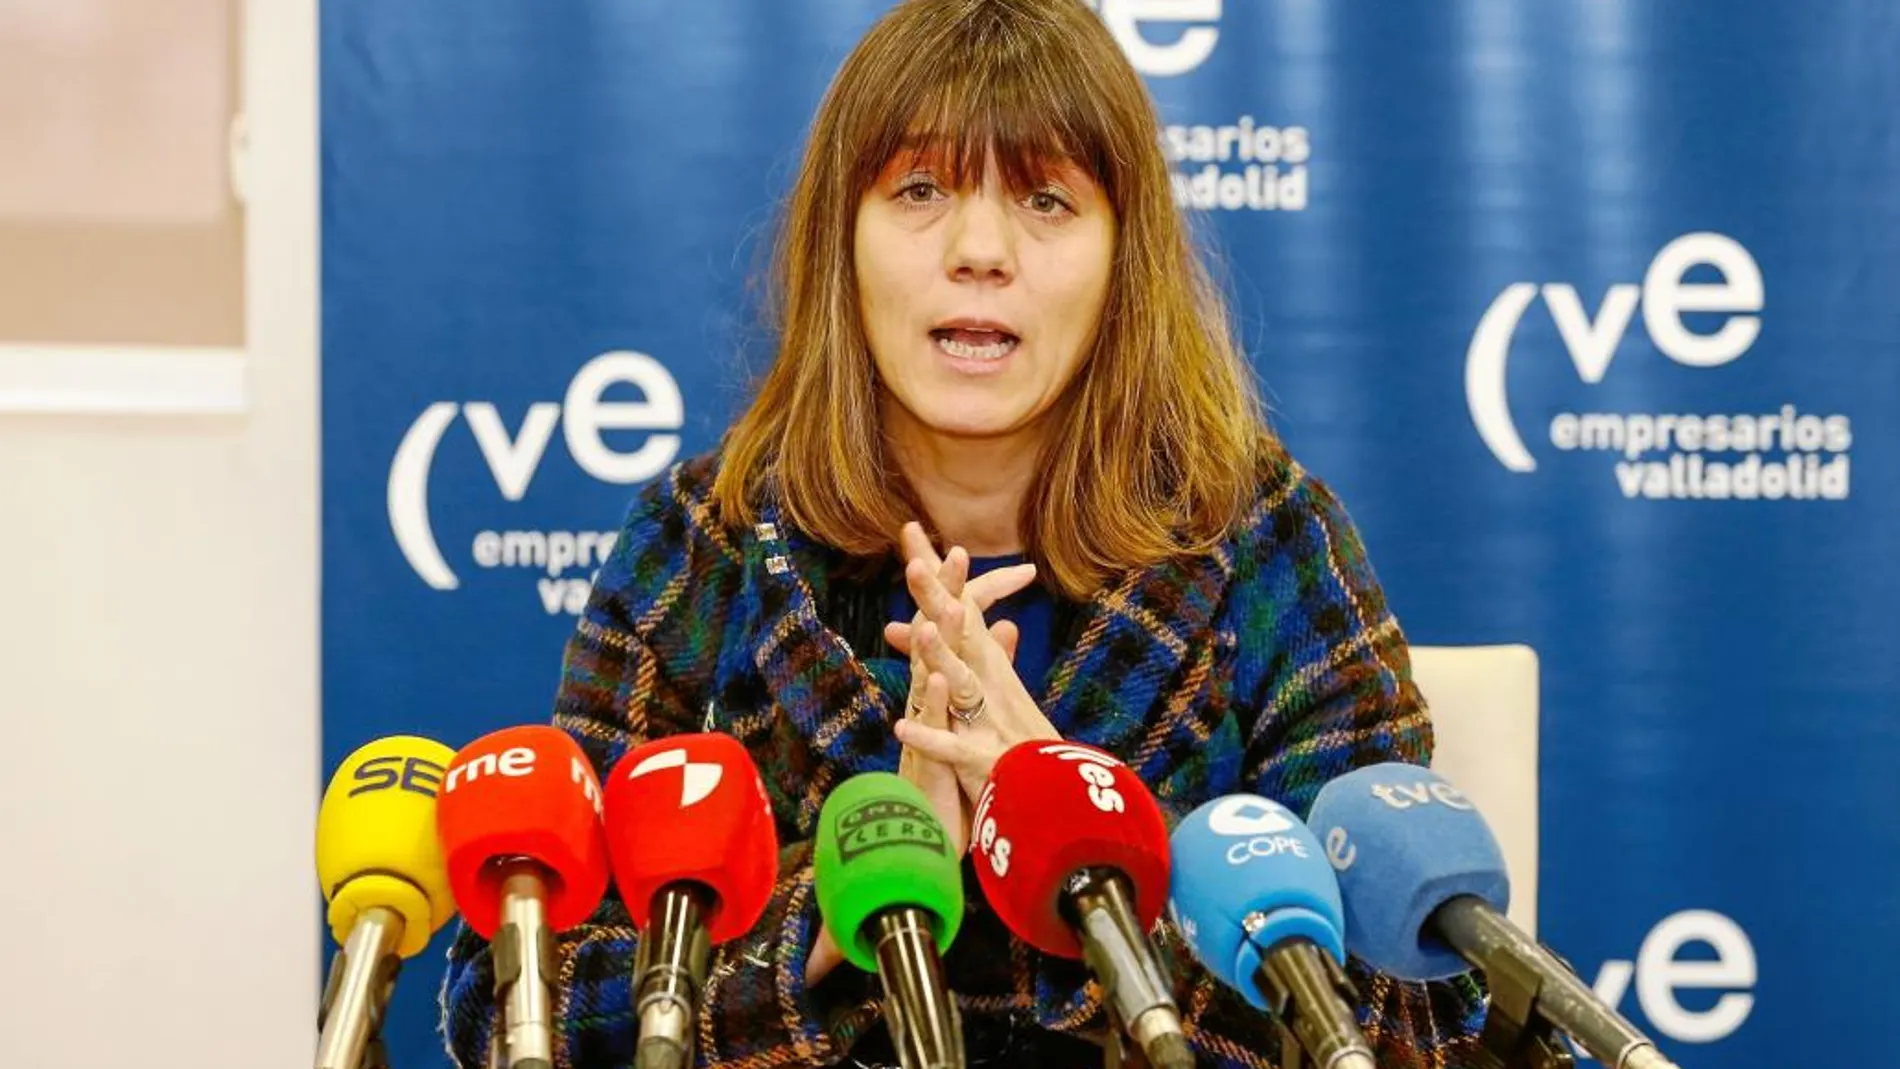 La presidenta de la Confederación Vallisoletana de Empresarios, Ángela de Miguel, haciendo balance de 2016.